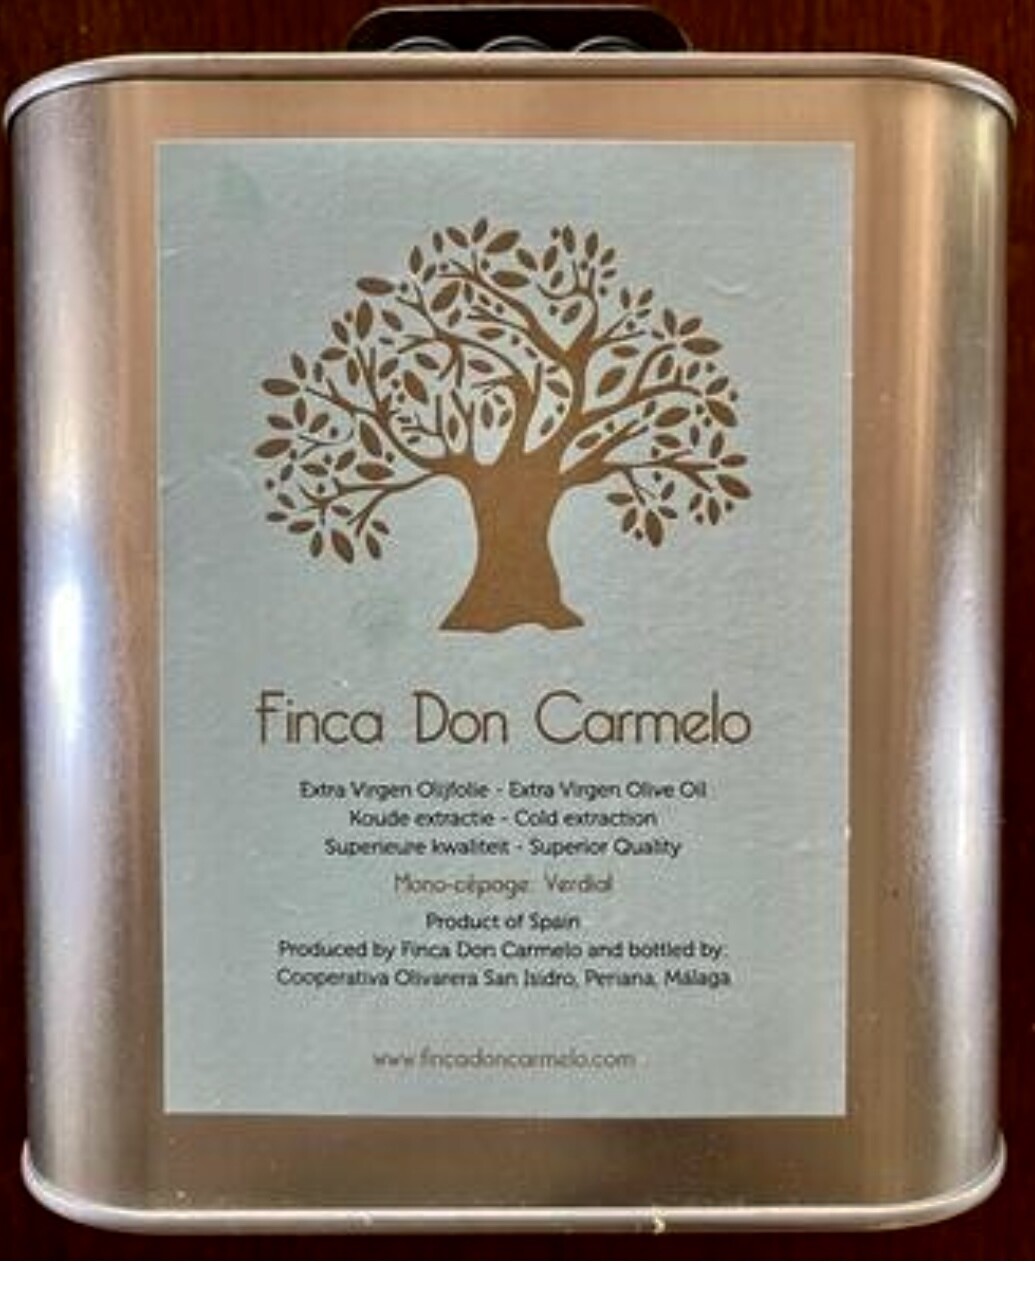 Nieuwe oogst! Finca Don Carmelo´s 100% biologische Extra Virgen olijfolie, blik 2,5 liter. Vroege oogst!